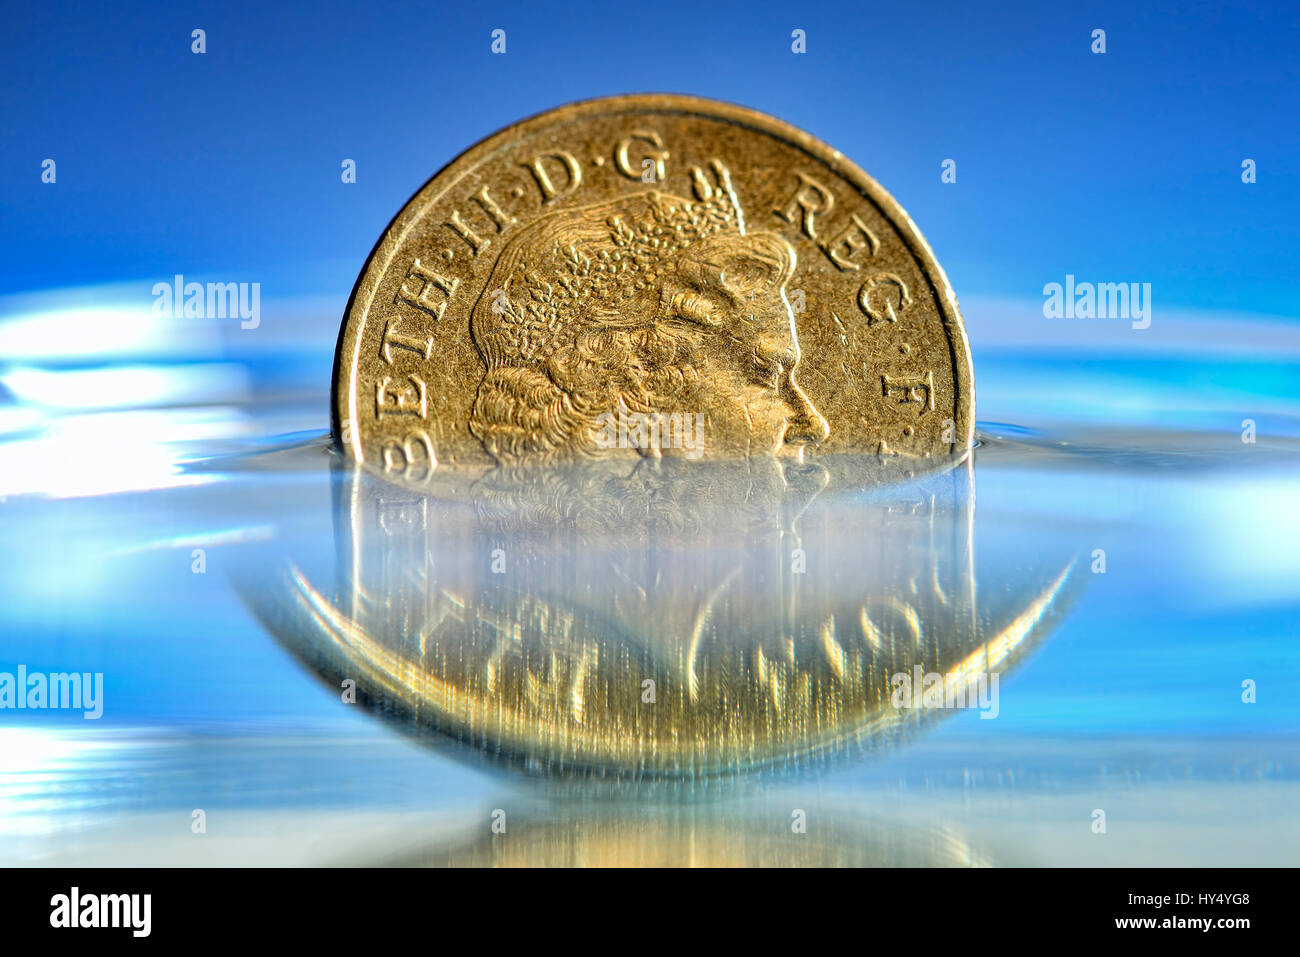 British one-pound coin nell'acqua, bassa pound corso, Britische Ein-Pfund-Muenze im Wasser, niedriger Pfund-Kurs Foto Stock